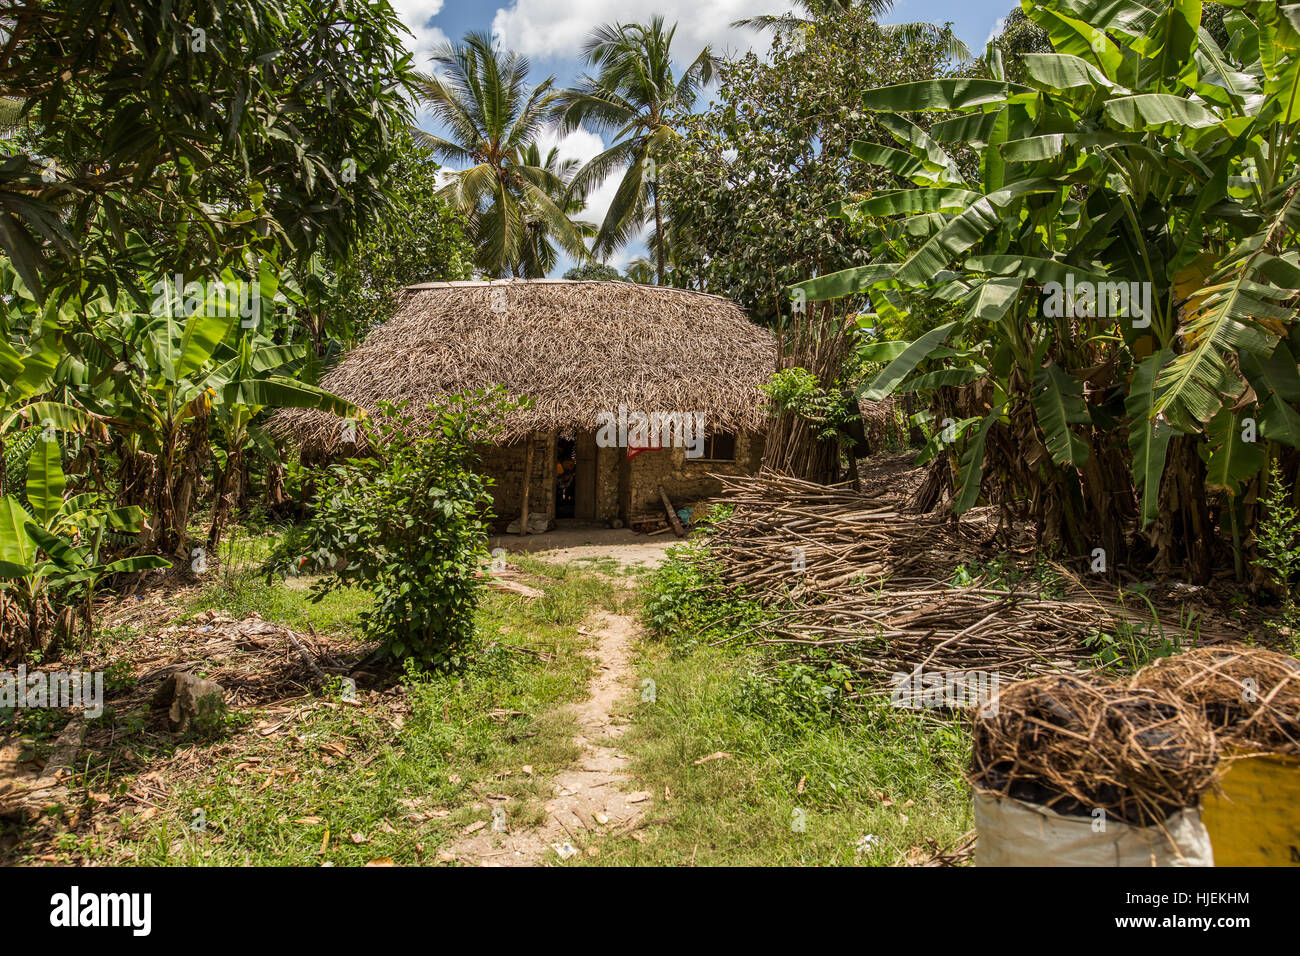 Primitive Häuschen mit Strohdach, gebaut von einheimischen lokalen Menschen, gemacht aus Holzstäbchen und roter Erde (keine Ziegel), Sansibar, Tansania, Afrika Stockfoto